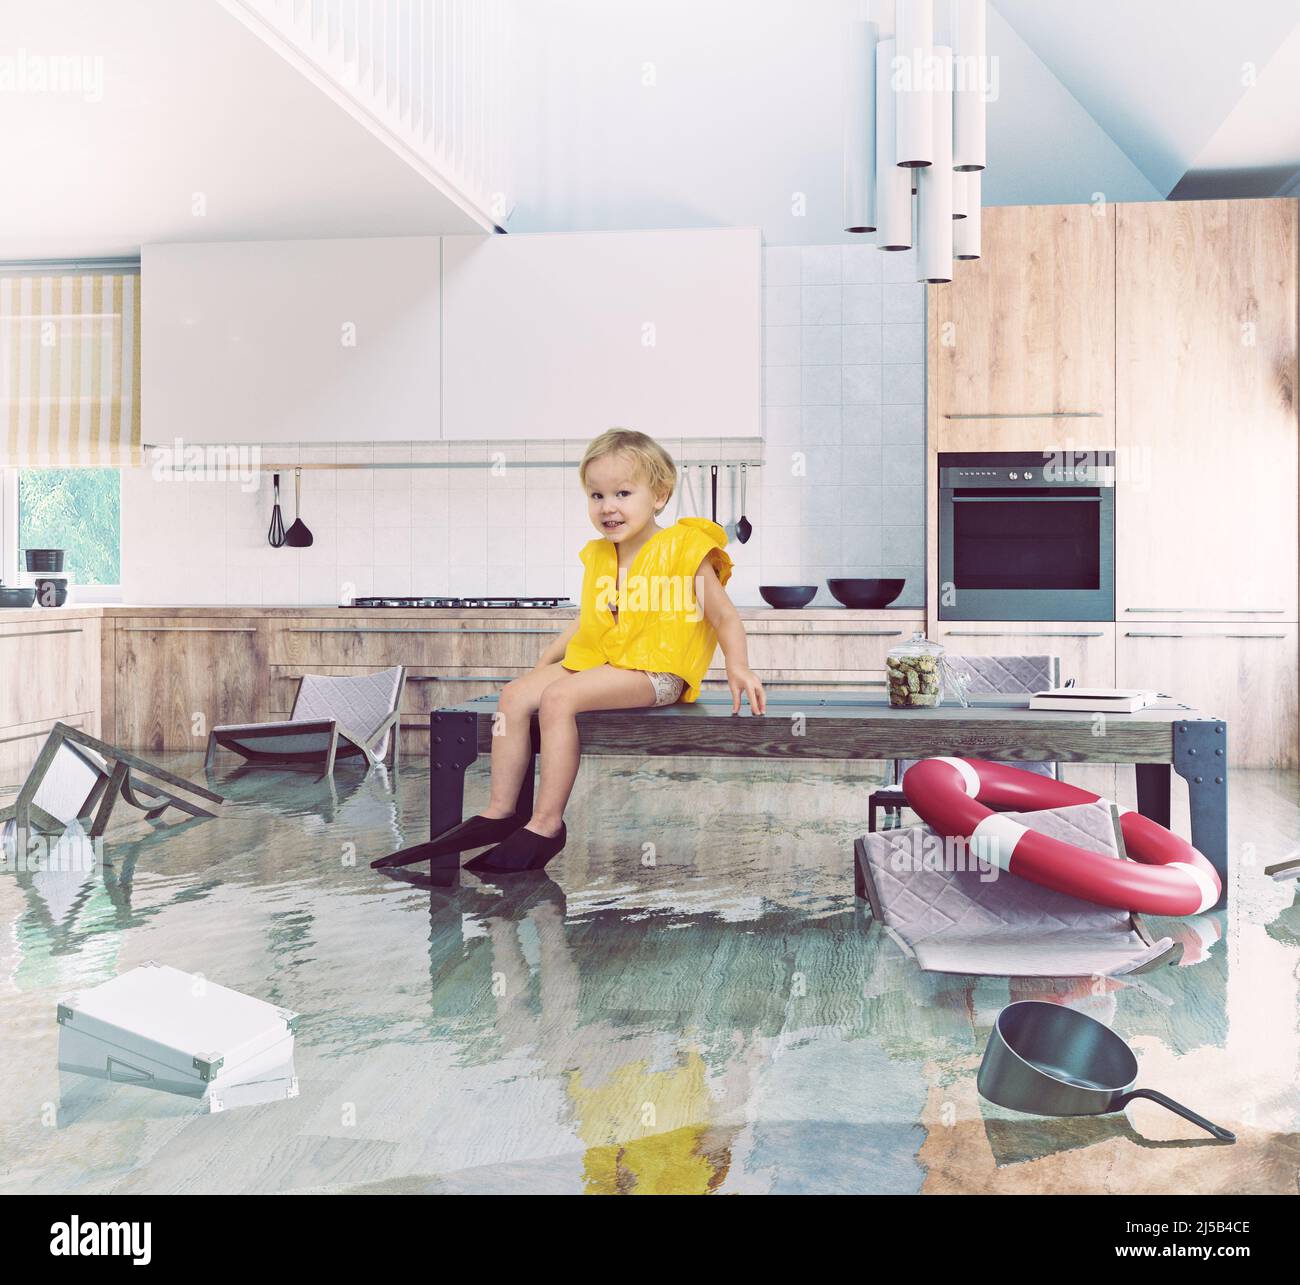 Garçon jouant sur la table en inondant la cuisine. Illustration du concept créatif de la combinaison multimédia et photo Banque D'Images